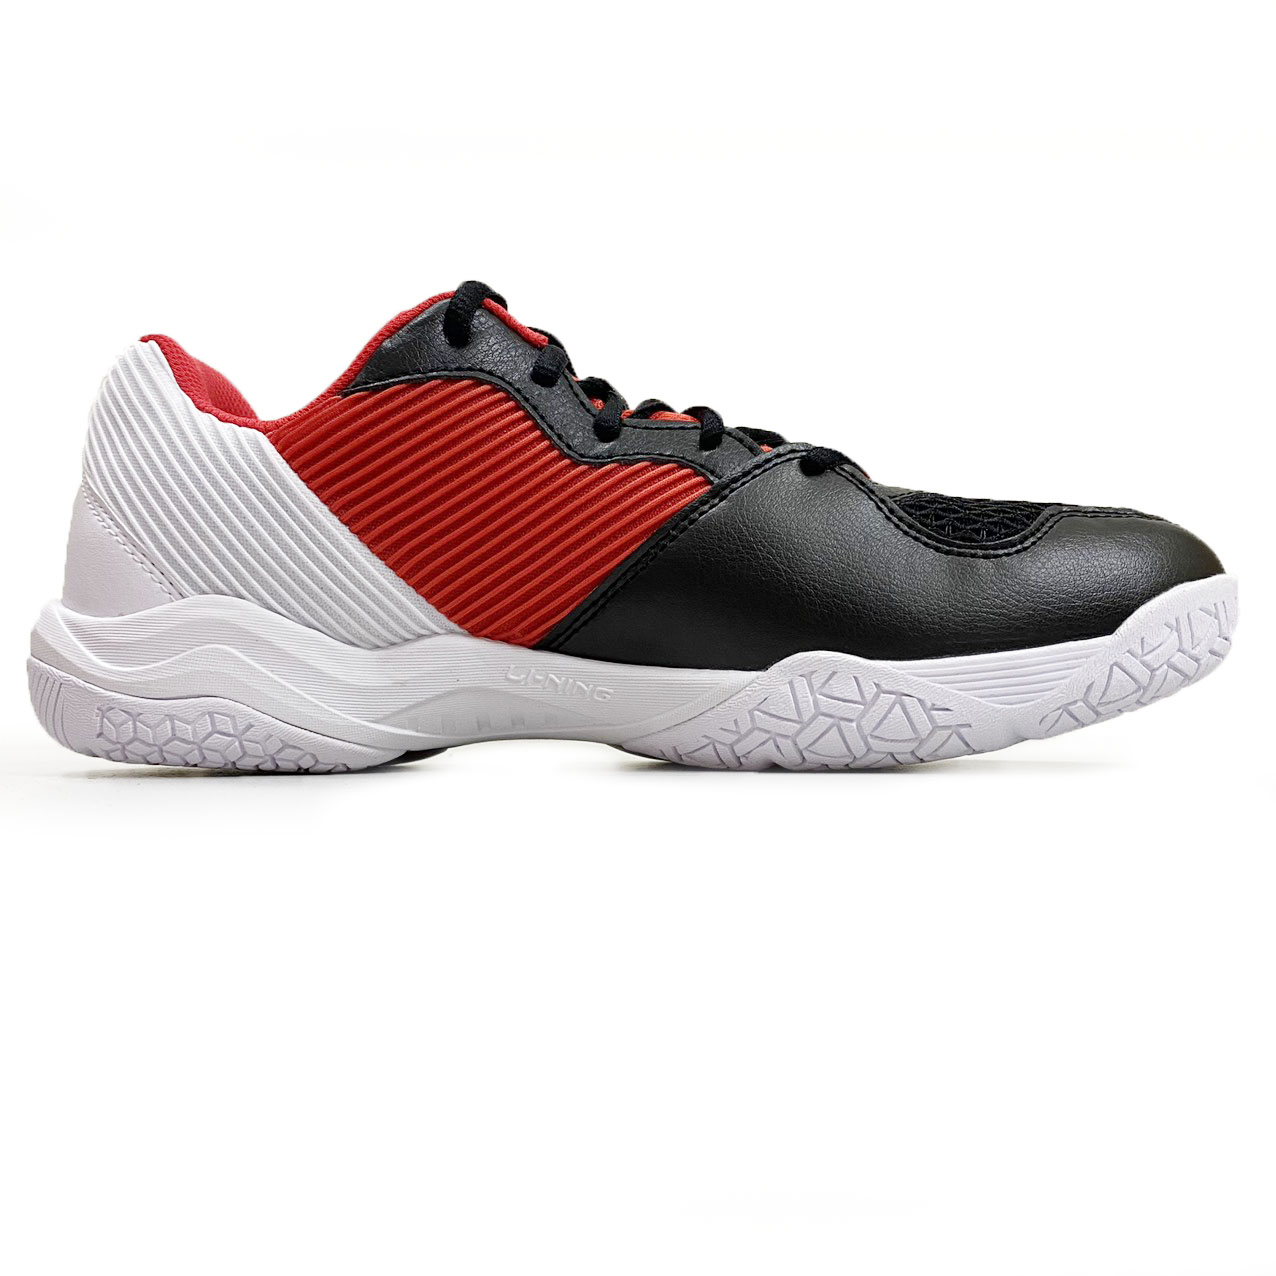 Giày cầu lông lining AYTS016-20 chính hãng mẫu mới màu đen đỏ-tặng tất thể thao bendu